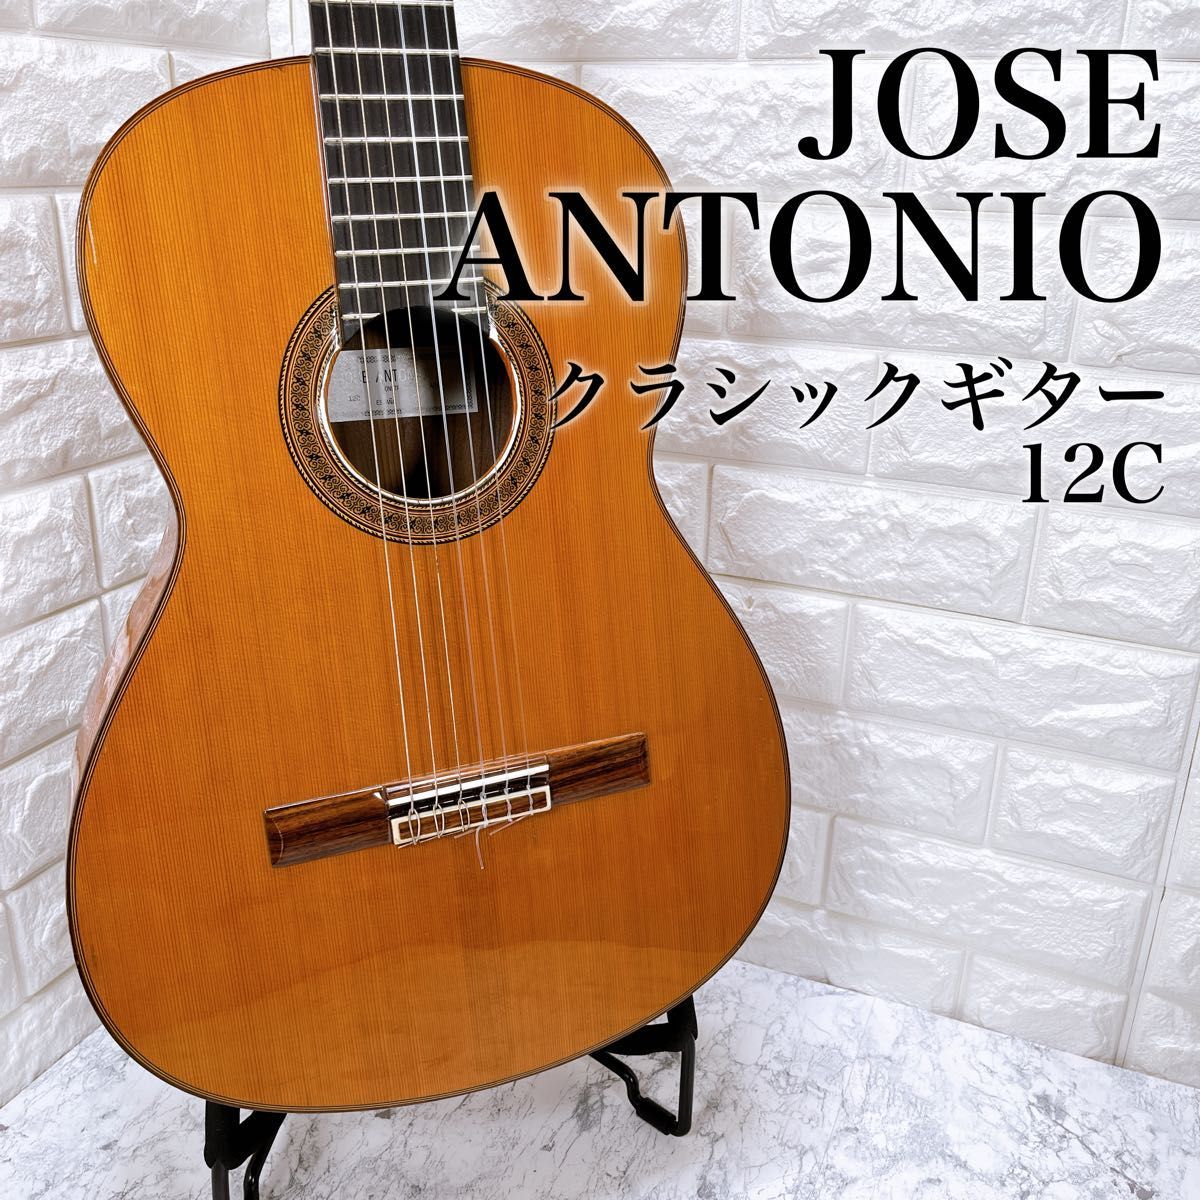 JOSE ANTONIO 12C ホセ・アントニオ クラシックギター ハードケース付き スペイン製